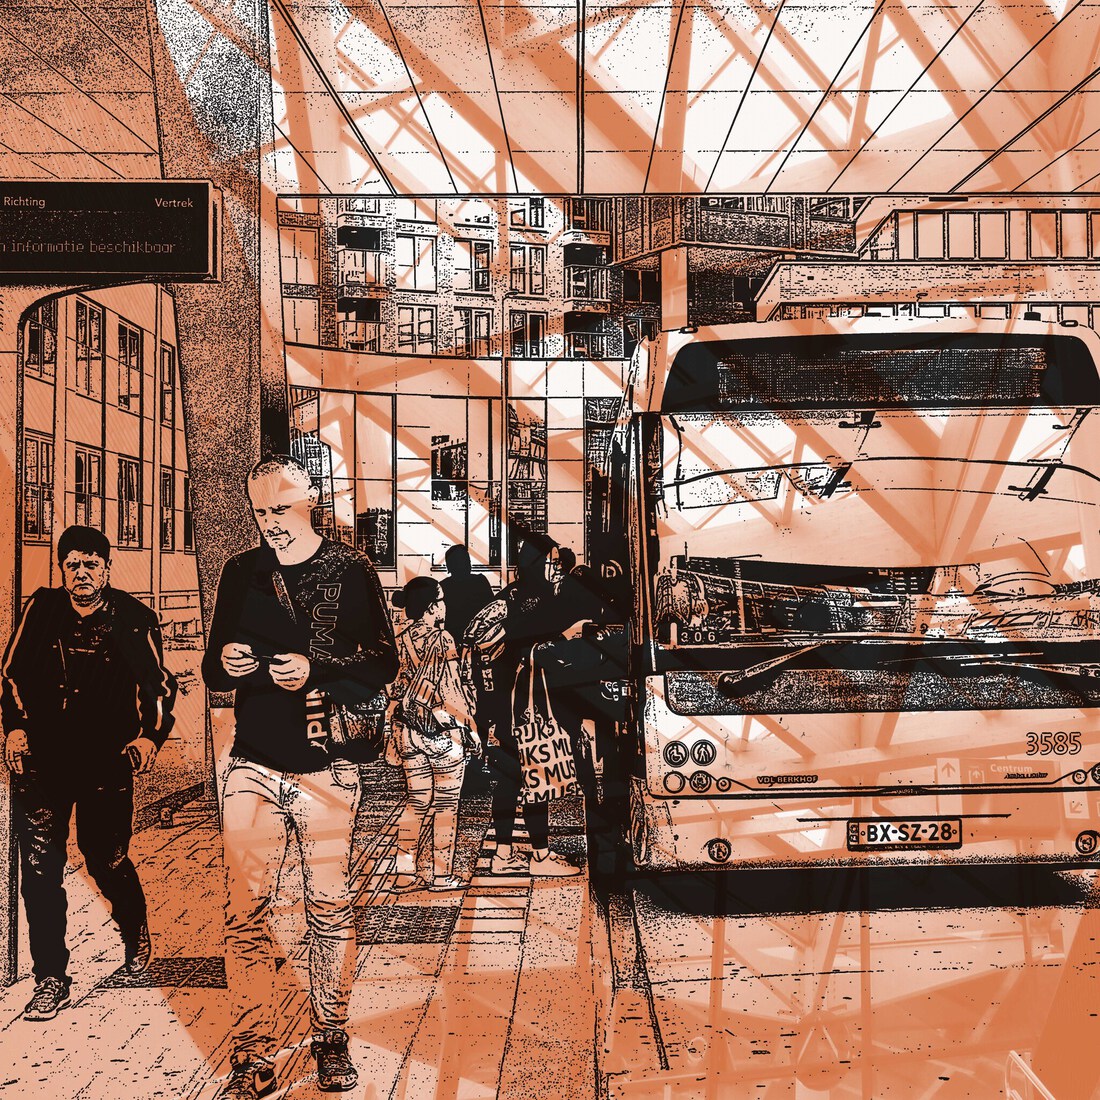 Bustation Noord 1  - digitale art print van Hilly van eerten